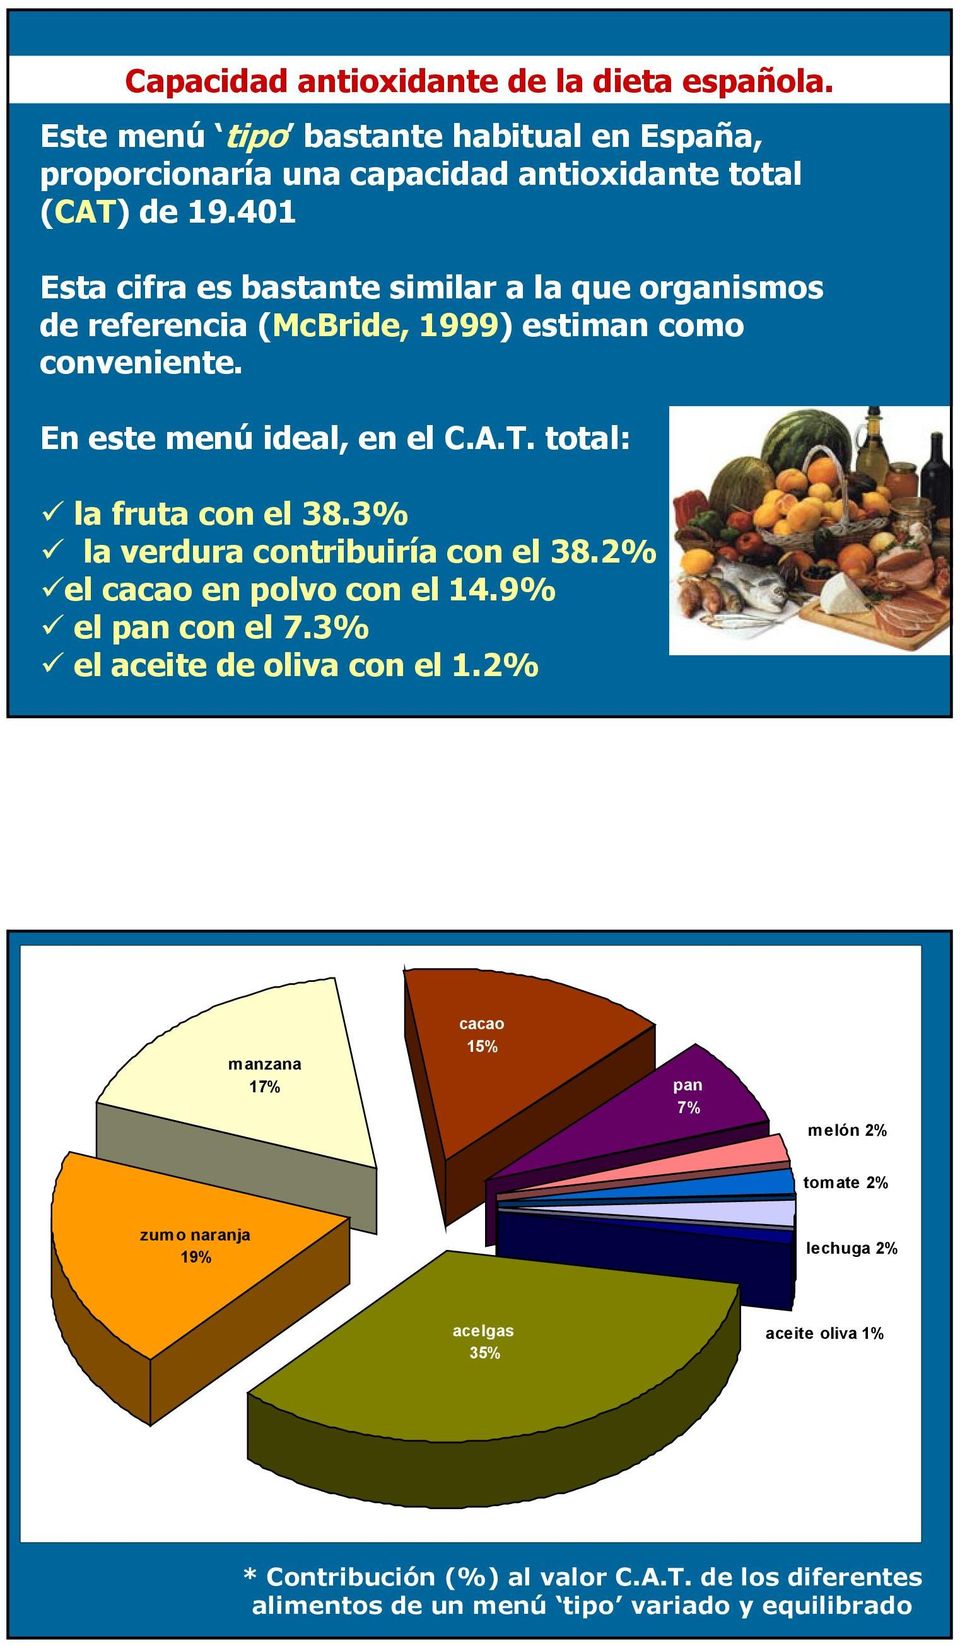 total: la fruta con el 38.3% la verdura contribuiría con el 38.2% el cacao en polvo con el 14.9% el pan con el 7.3% el aceite de oliva con el 1.